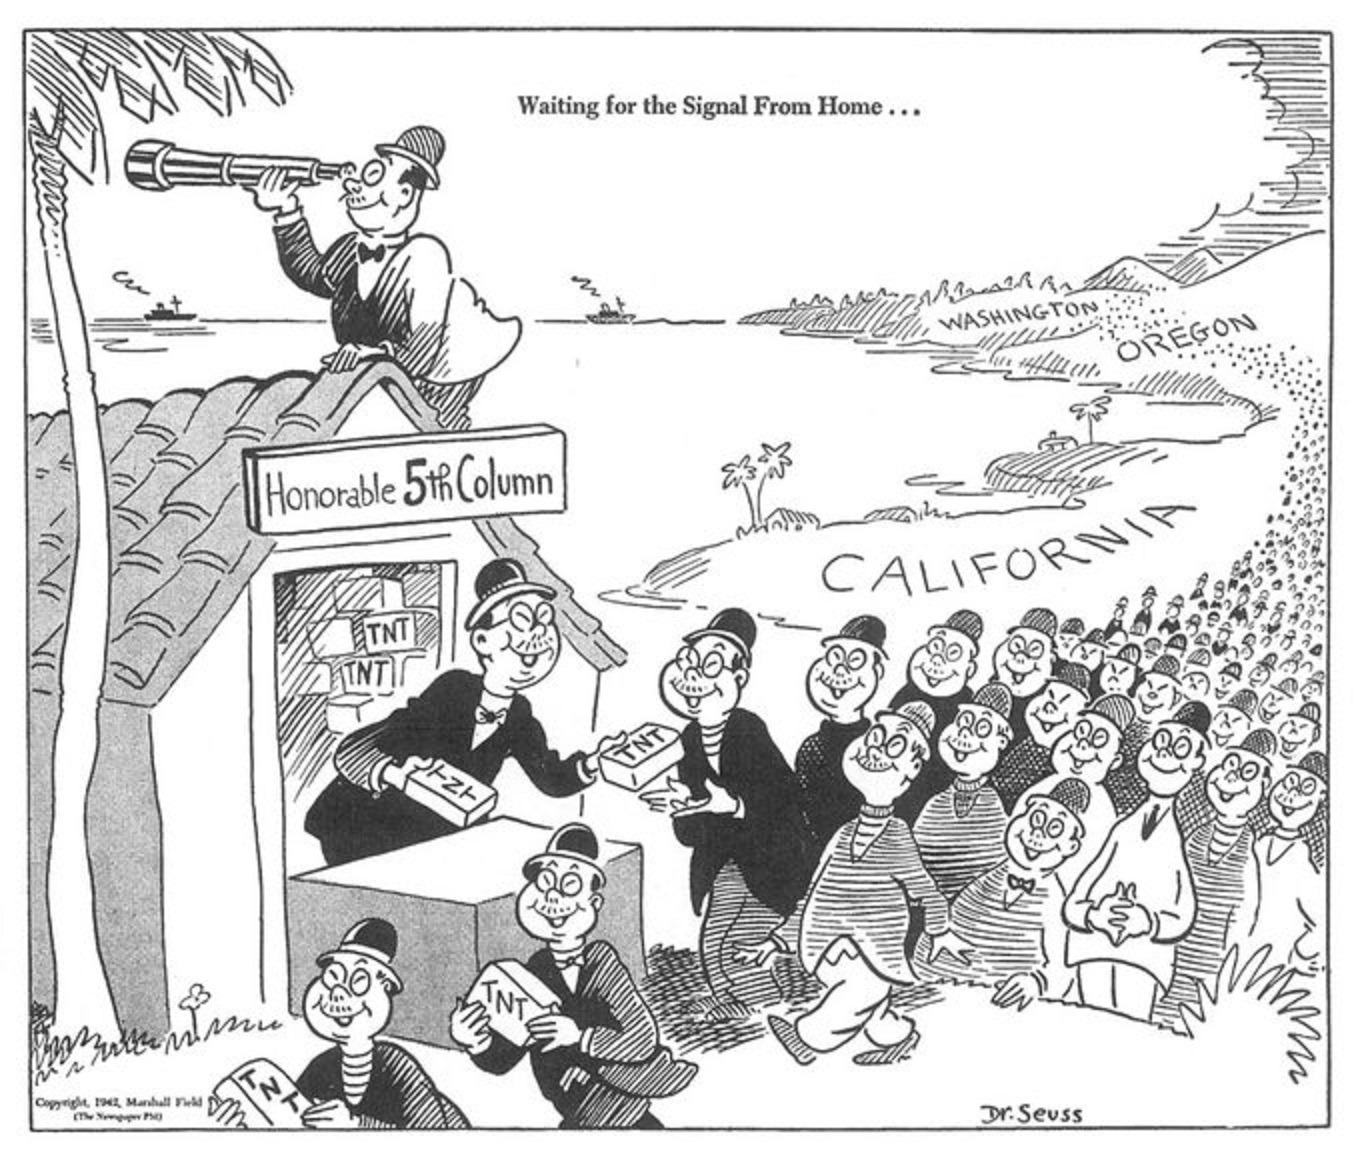 Dr. Seuss racist political cartoon ran for FDR